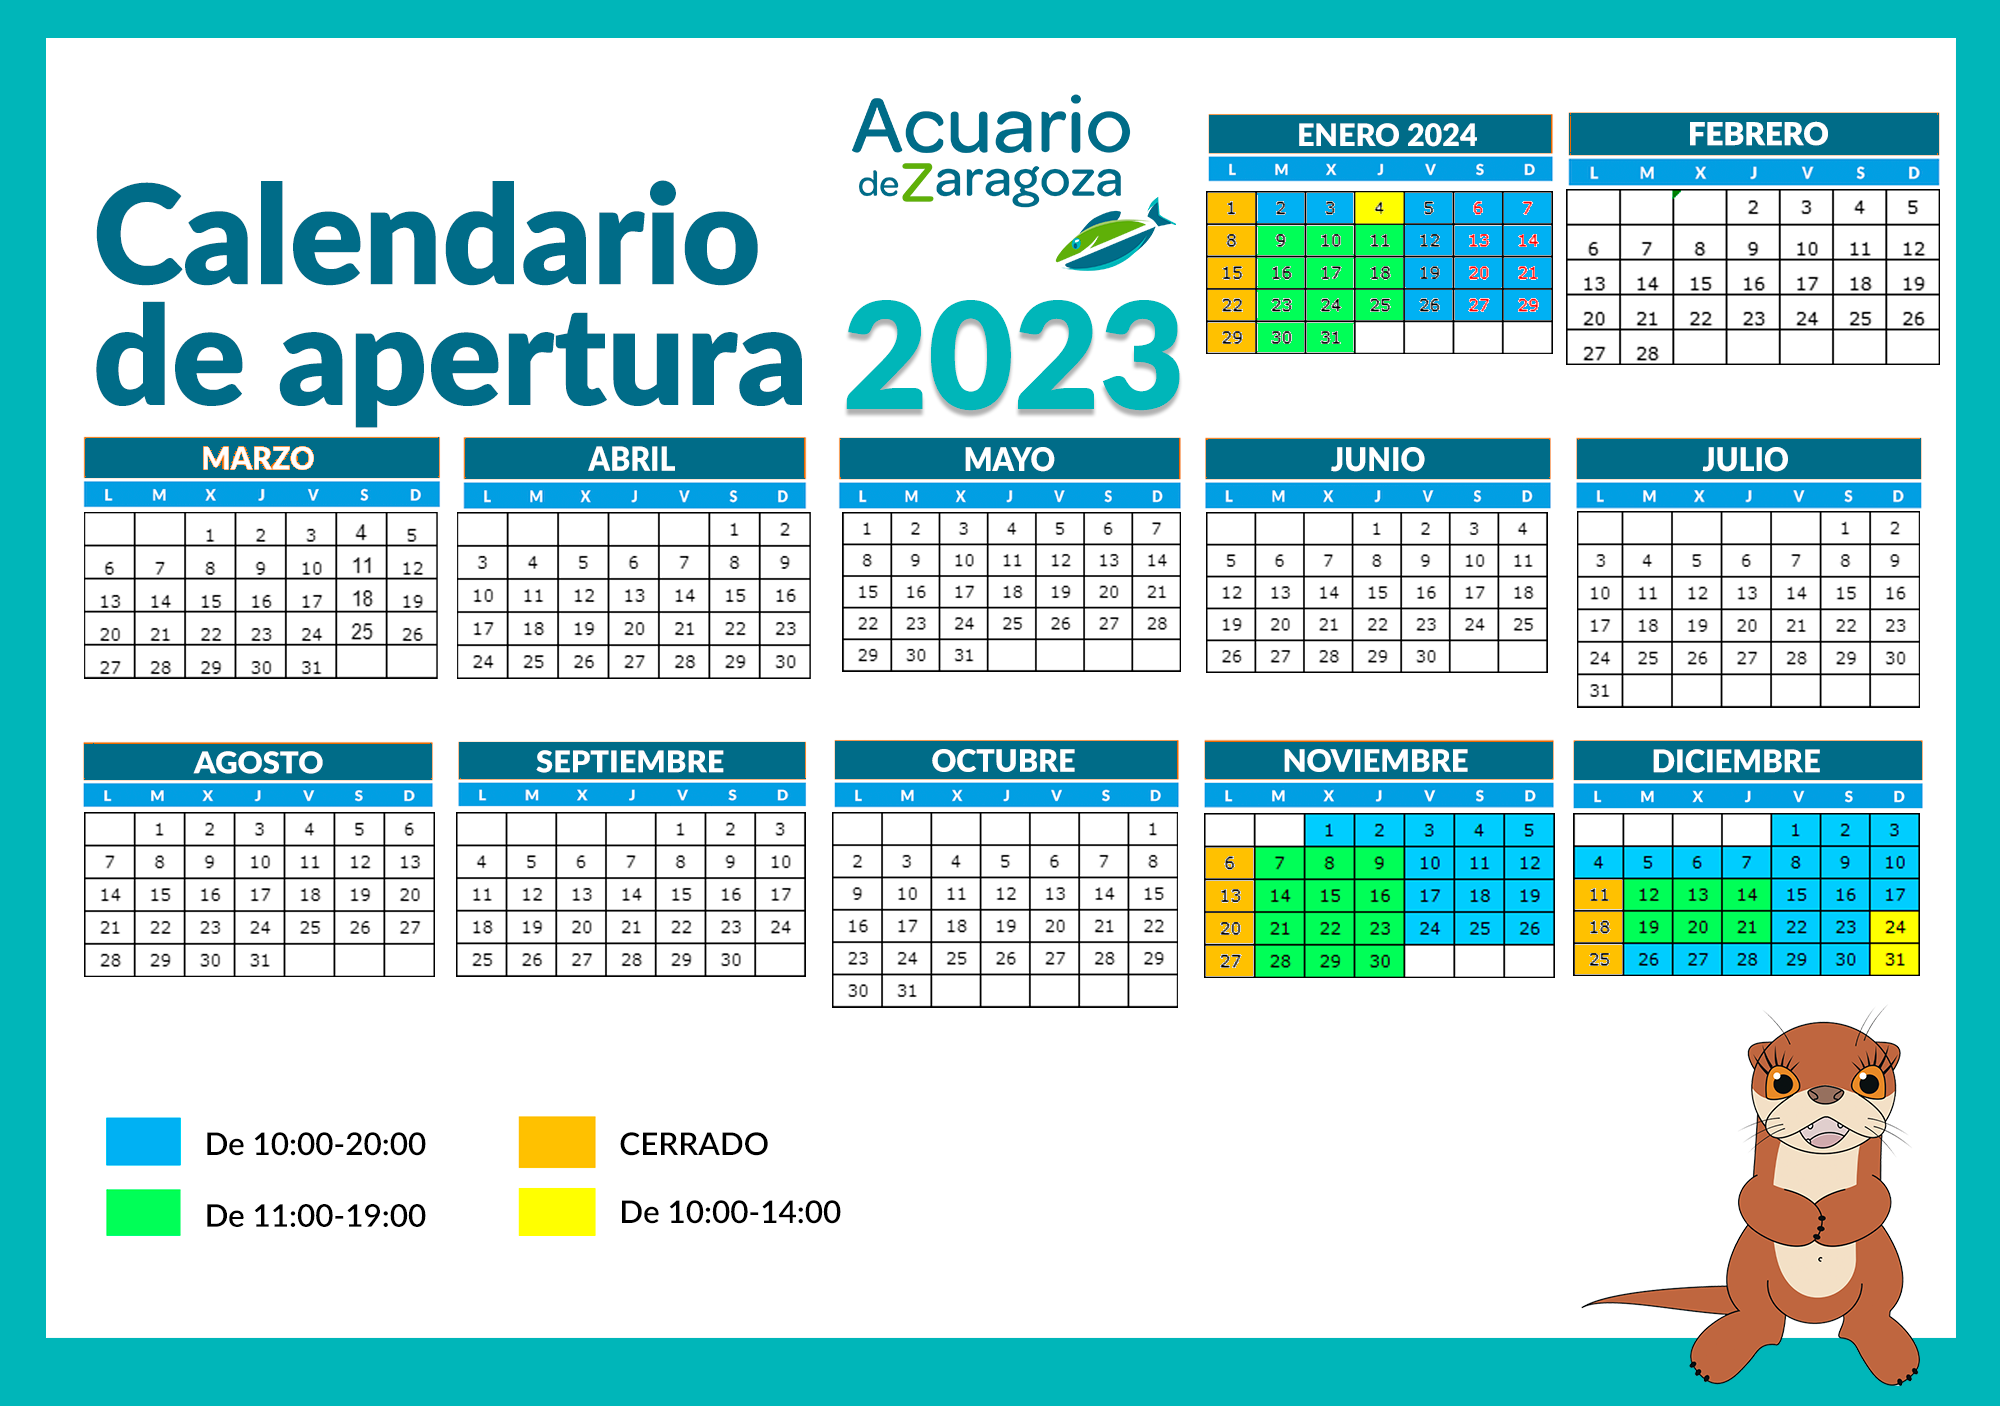 Calendario apertura Acuario de Zaragoza nov, dic 2023 y enero 24